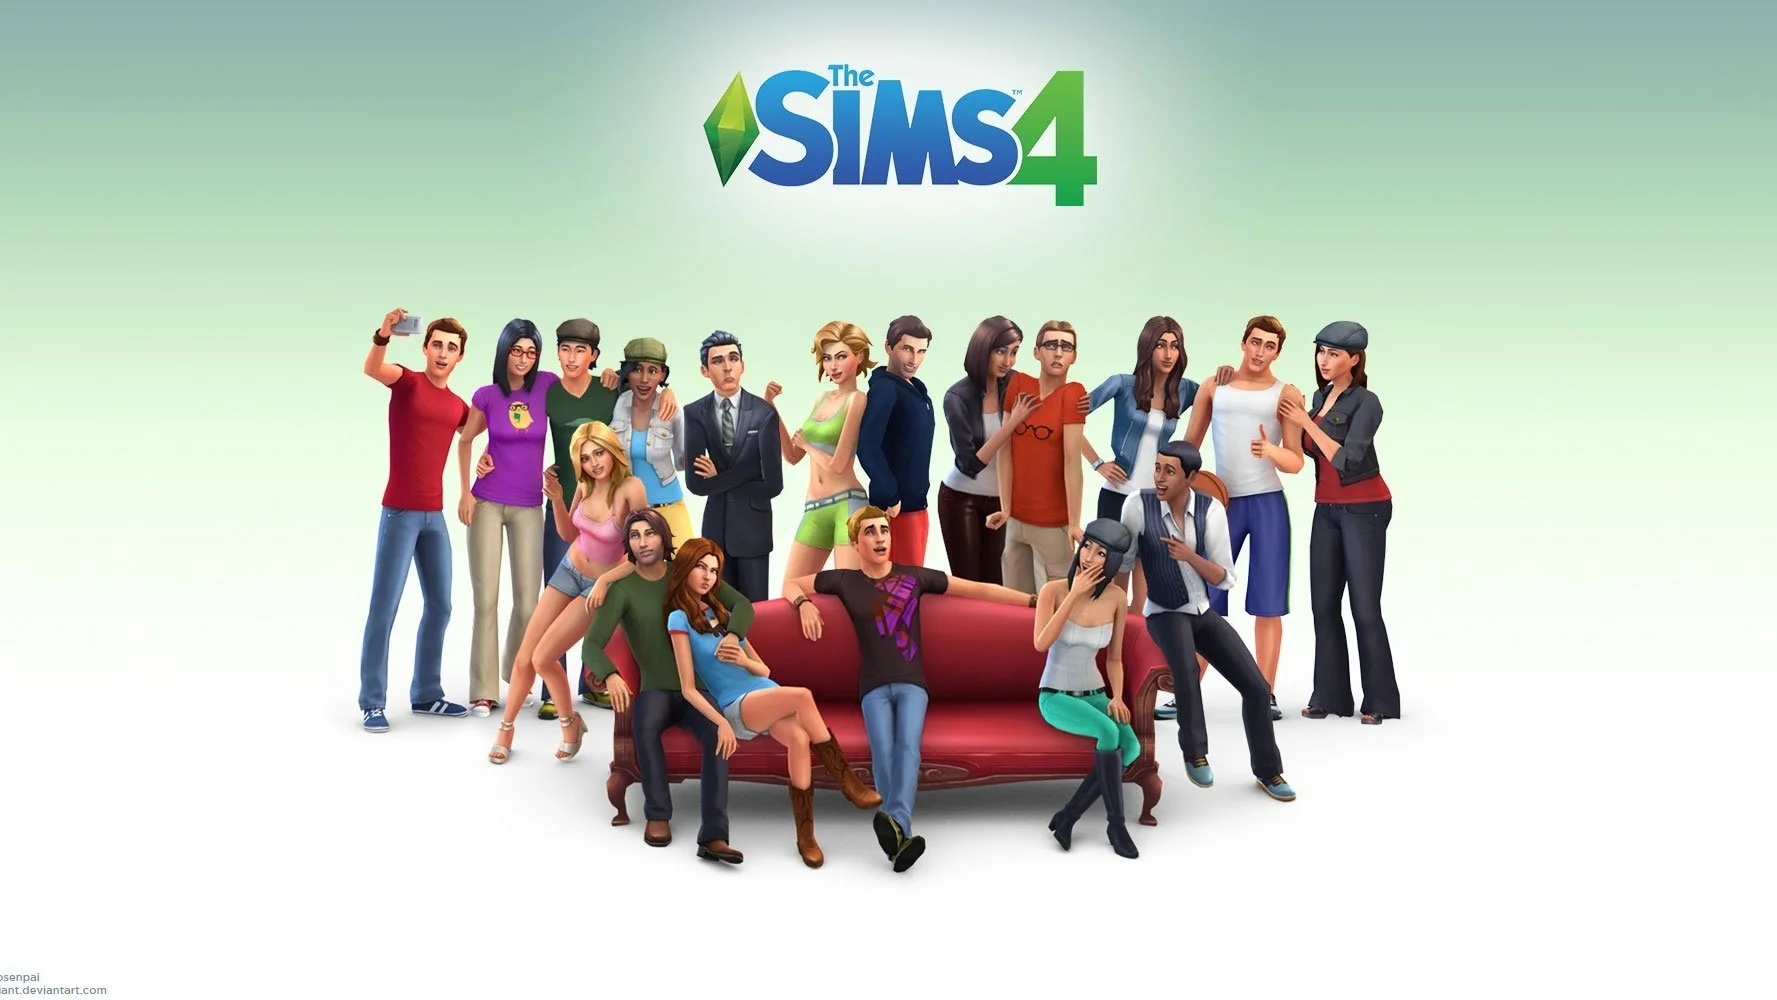 Зачем жить реальной жизнью, когда есть виртуальная? В The Sims можно найти хорошую работу, построить отличный дом, завести семью, а потом в один миг уничтожить это и начать заново.